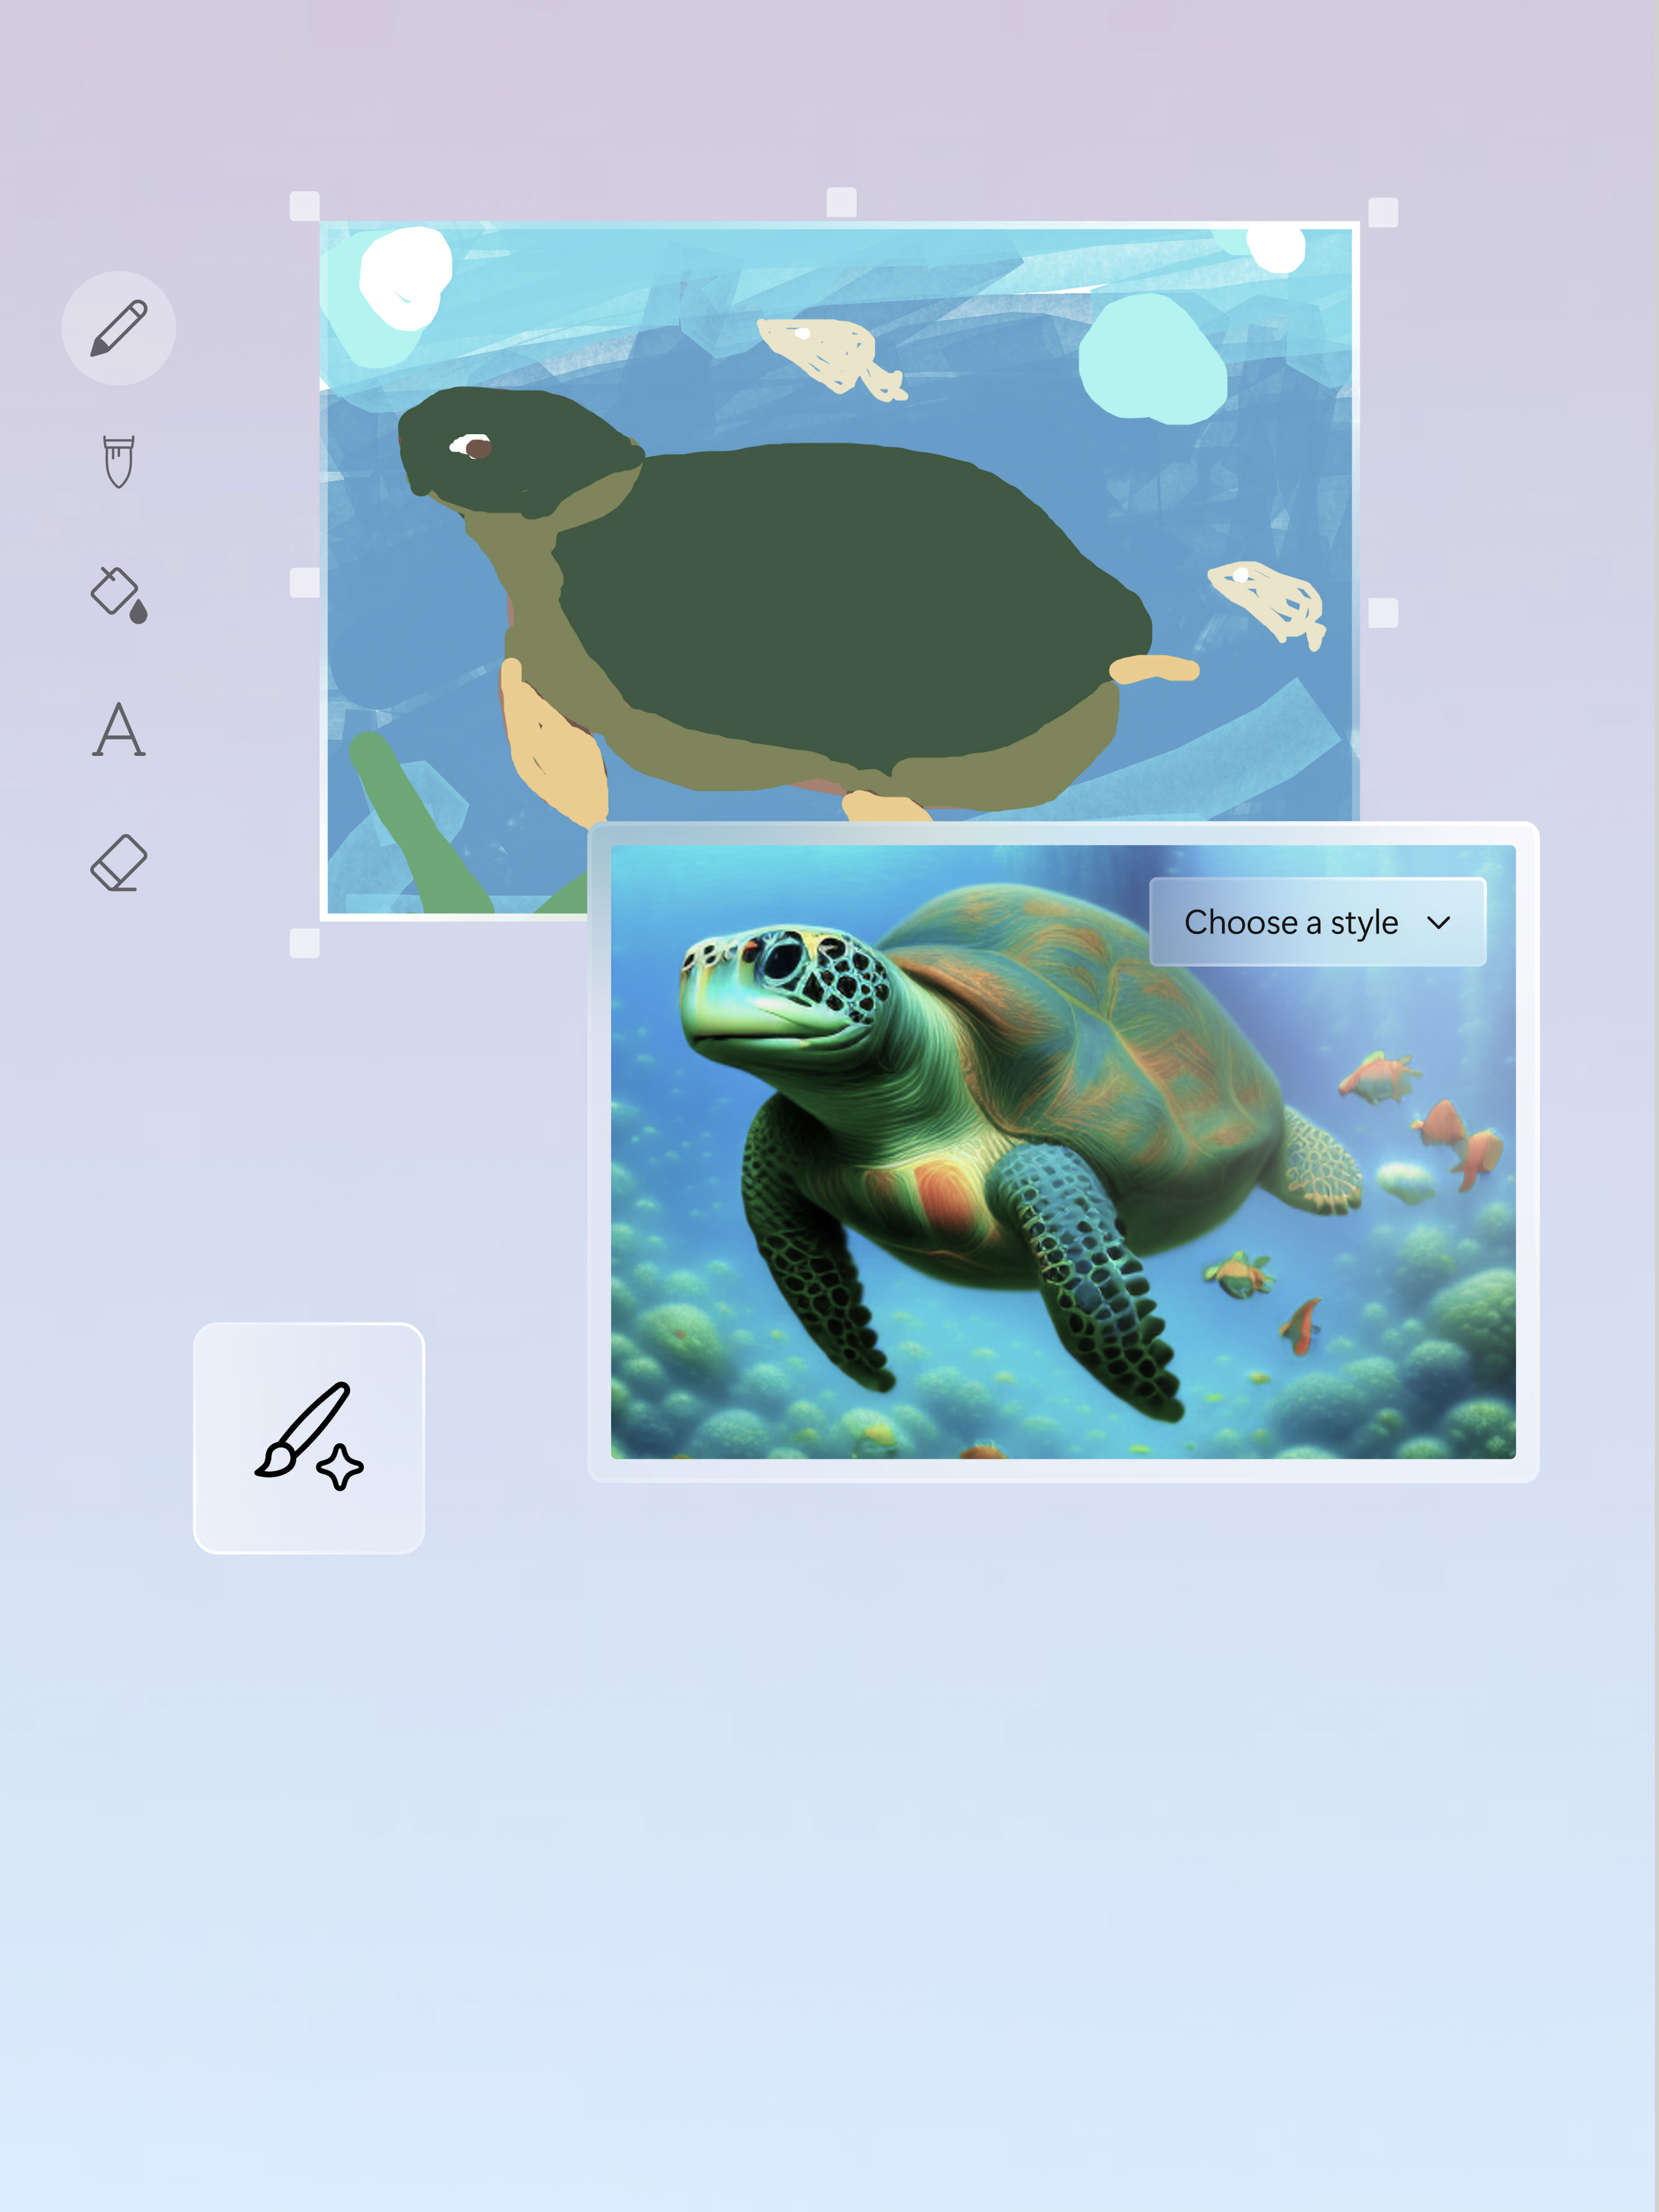 Uma composição de um artista e uma imagem de uma tartaruga